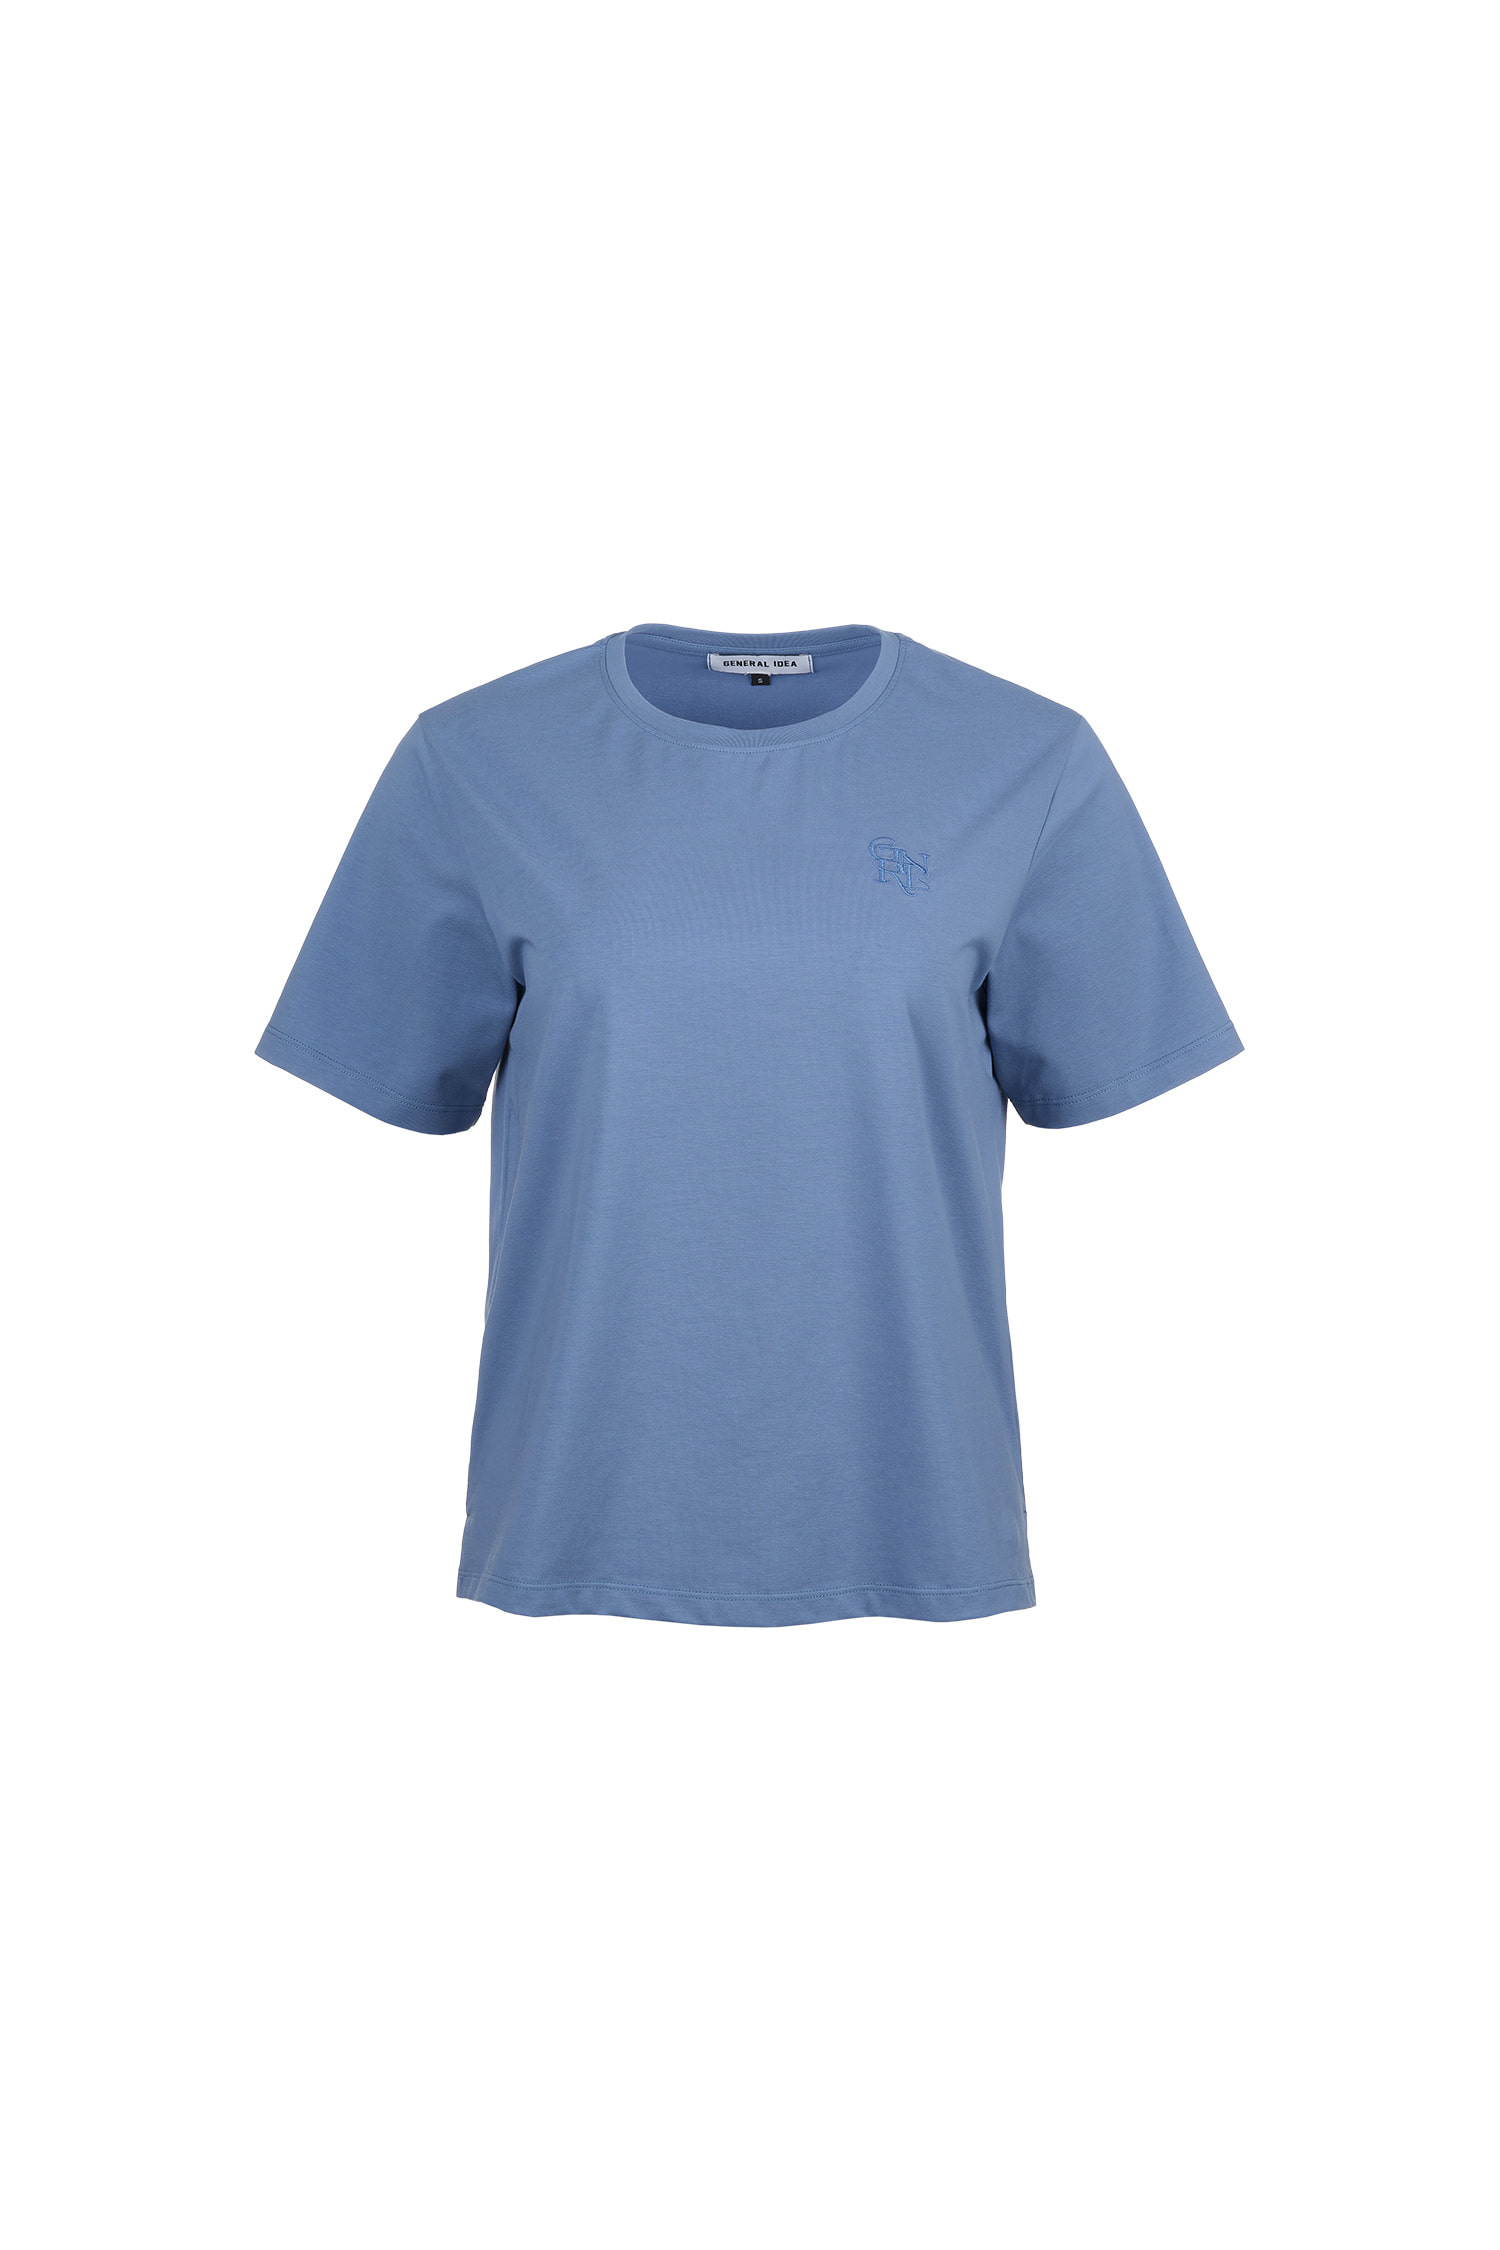 WOMAN GNRL シルケット スパン Tシャツ [BLUE]